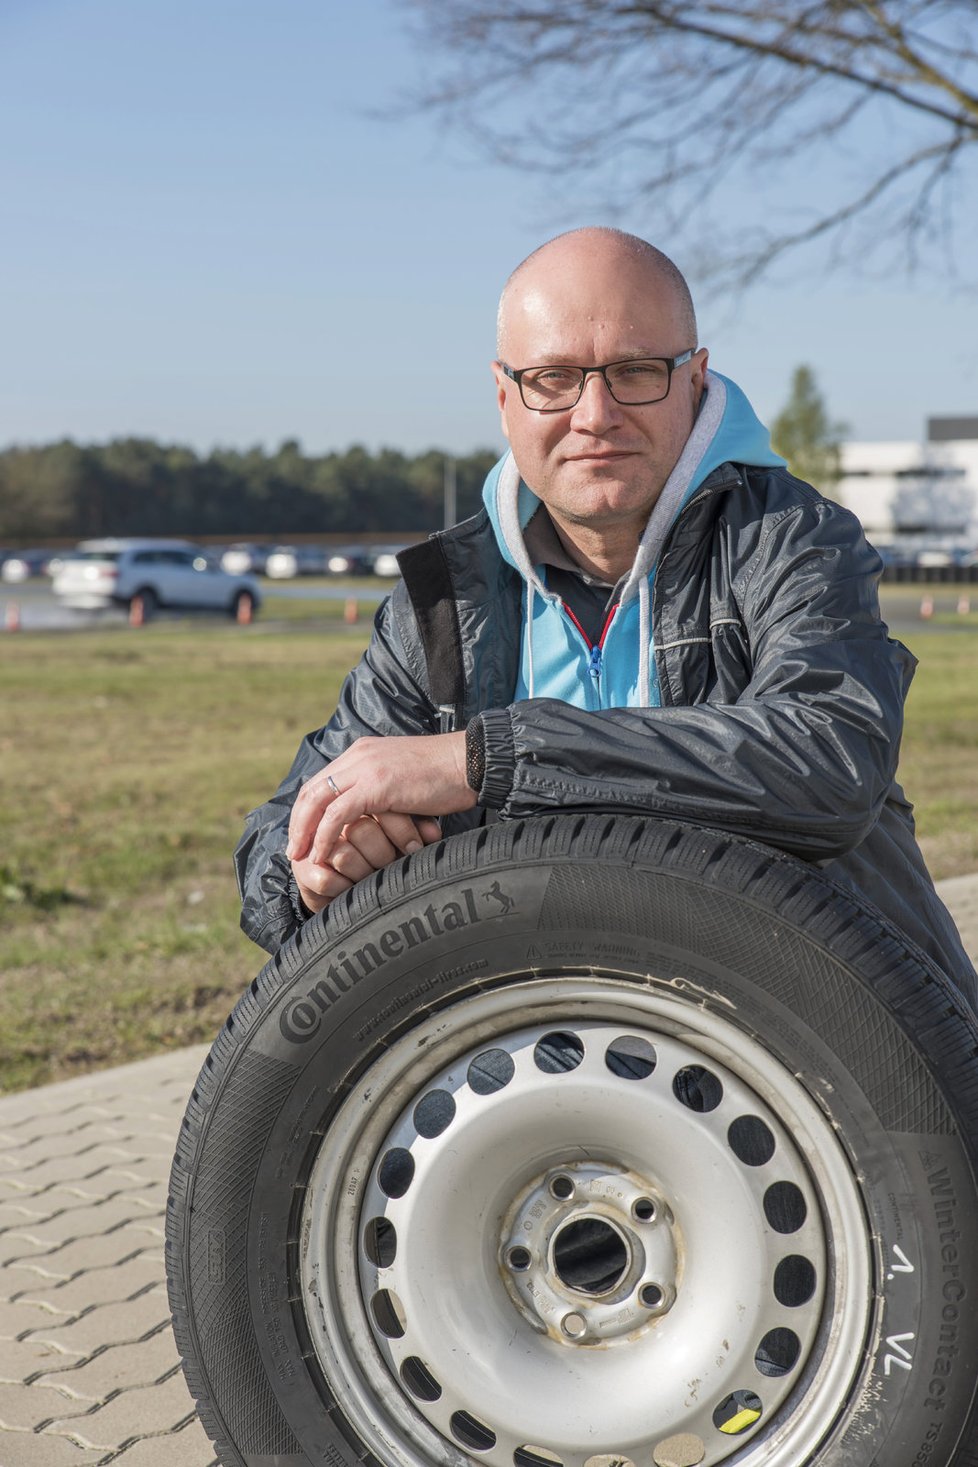 Hloubka dezénu pneumatiky rozhoduje o kvalitě jízdy. Renomovaní výrobci umísťují na gumy značky, podle kterých poznáte jejich ojetí.